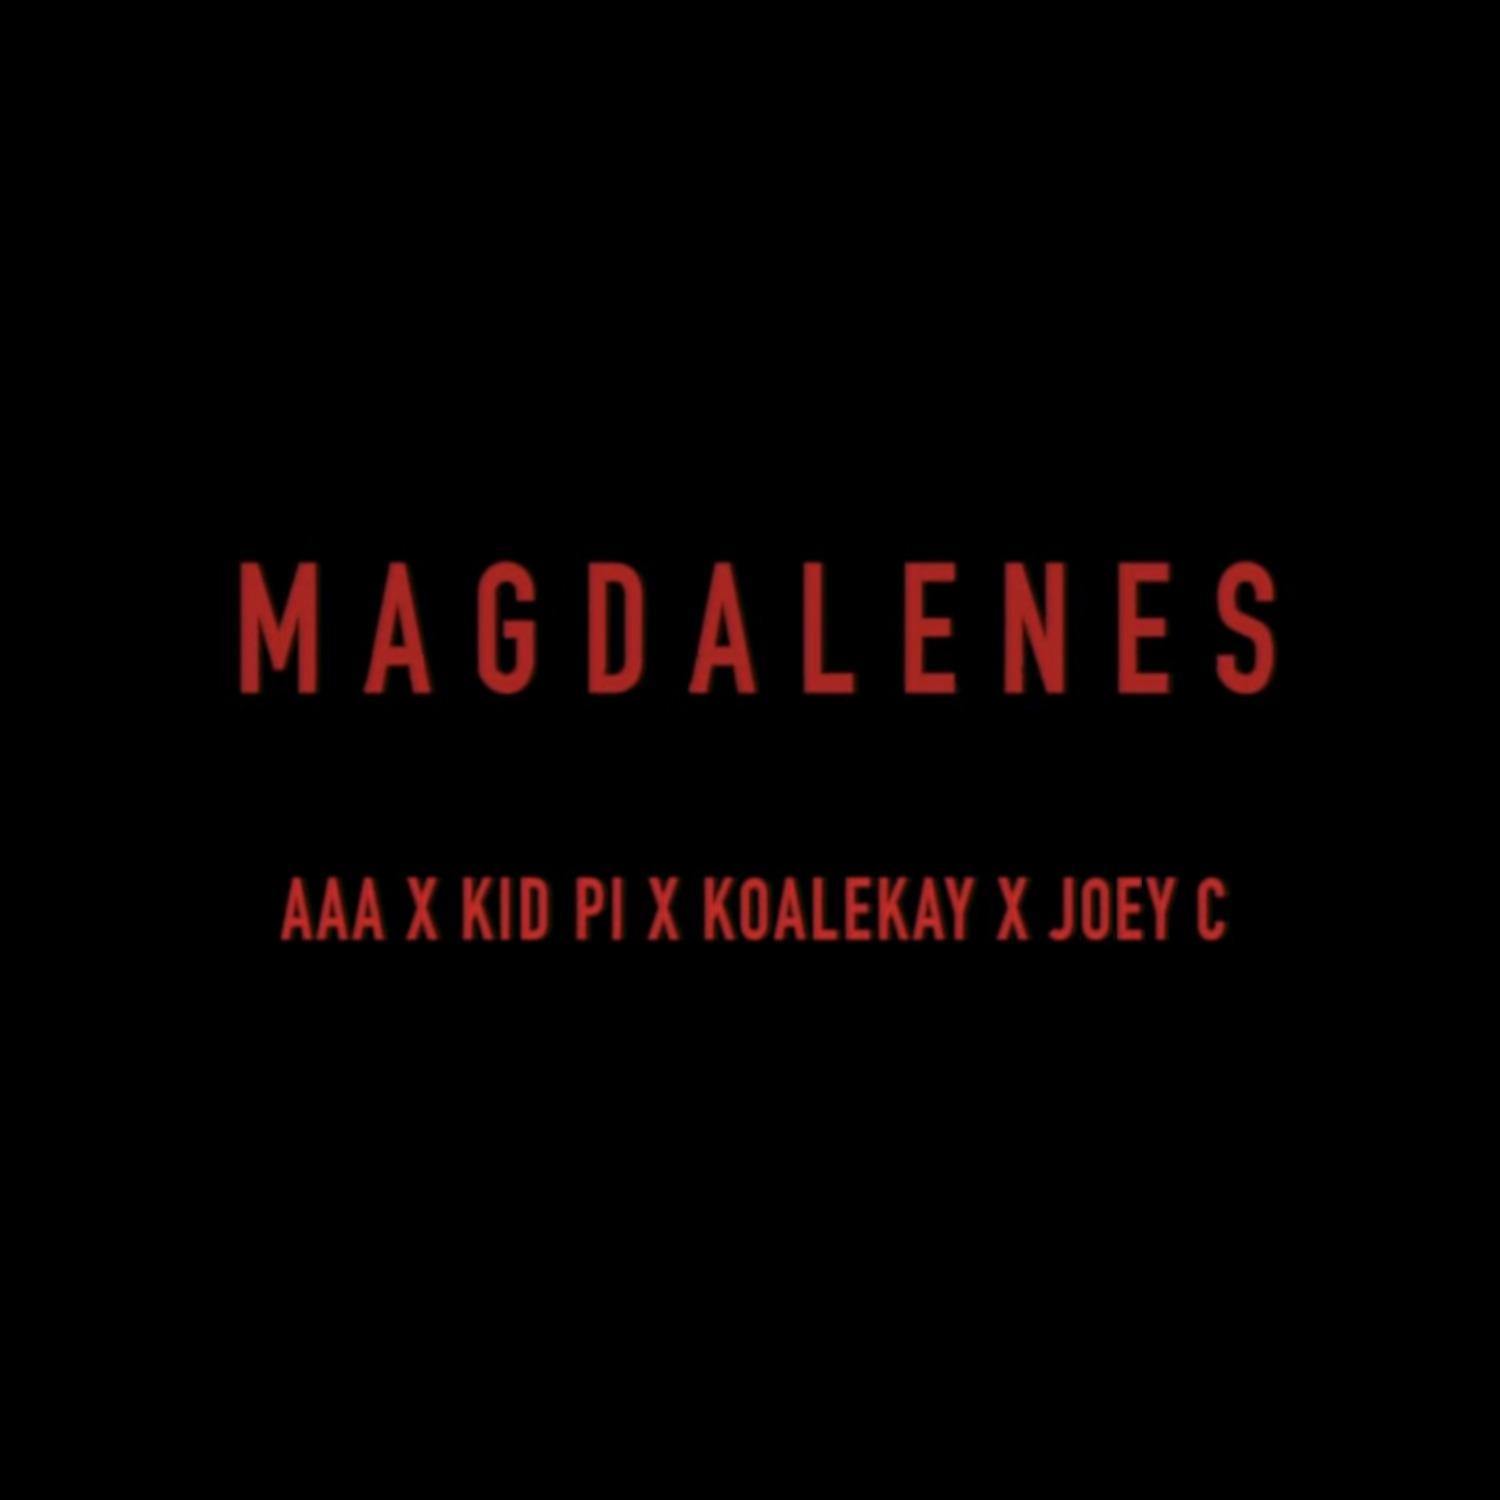 Magdalenes